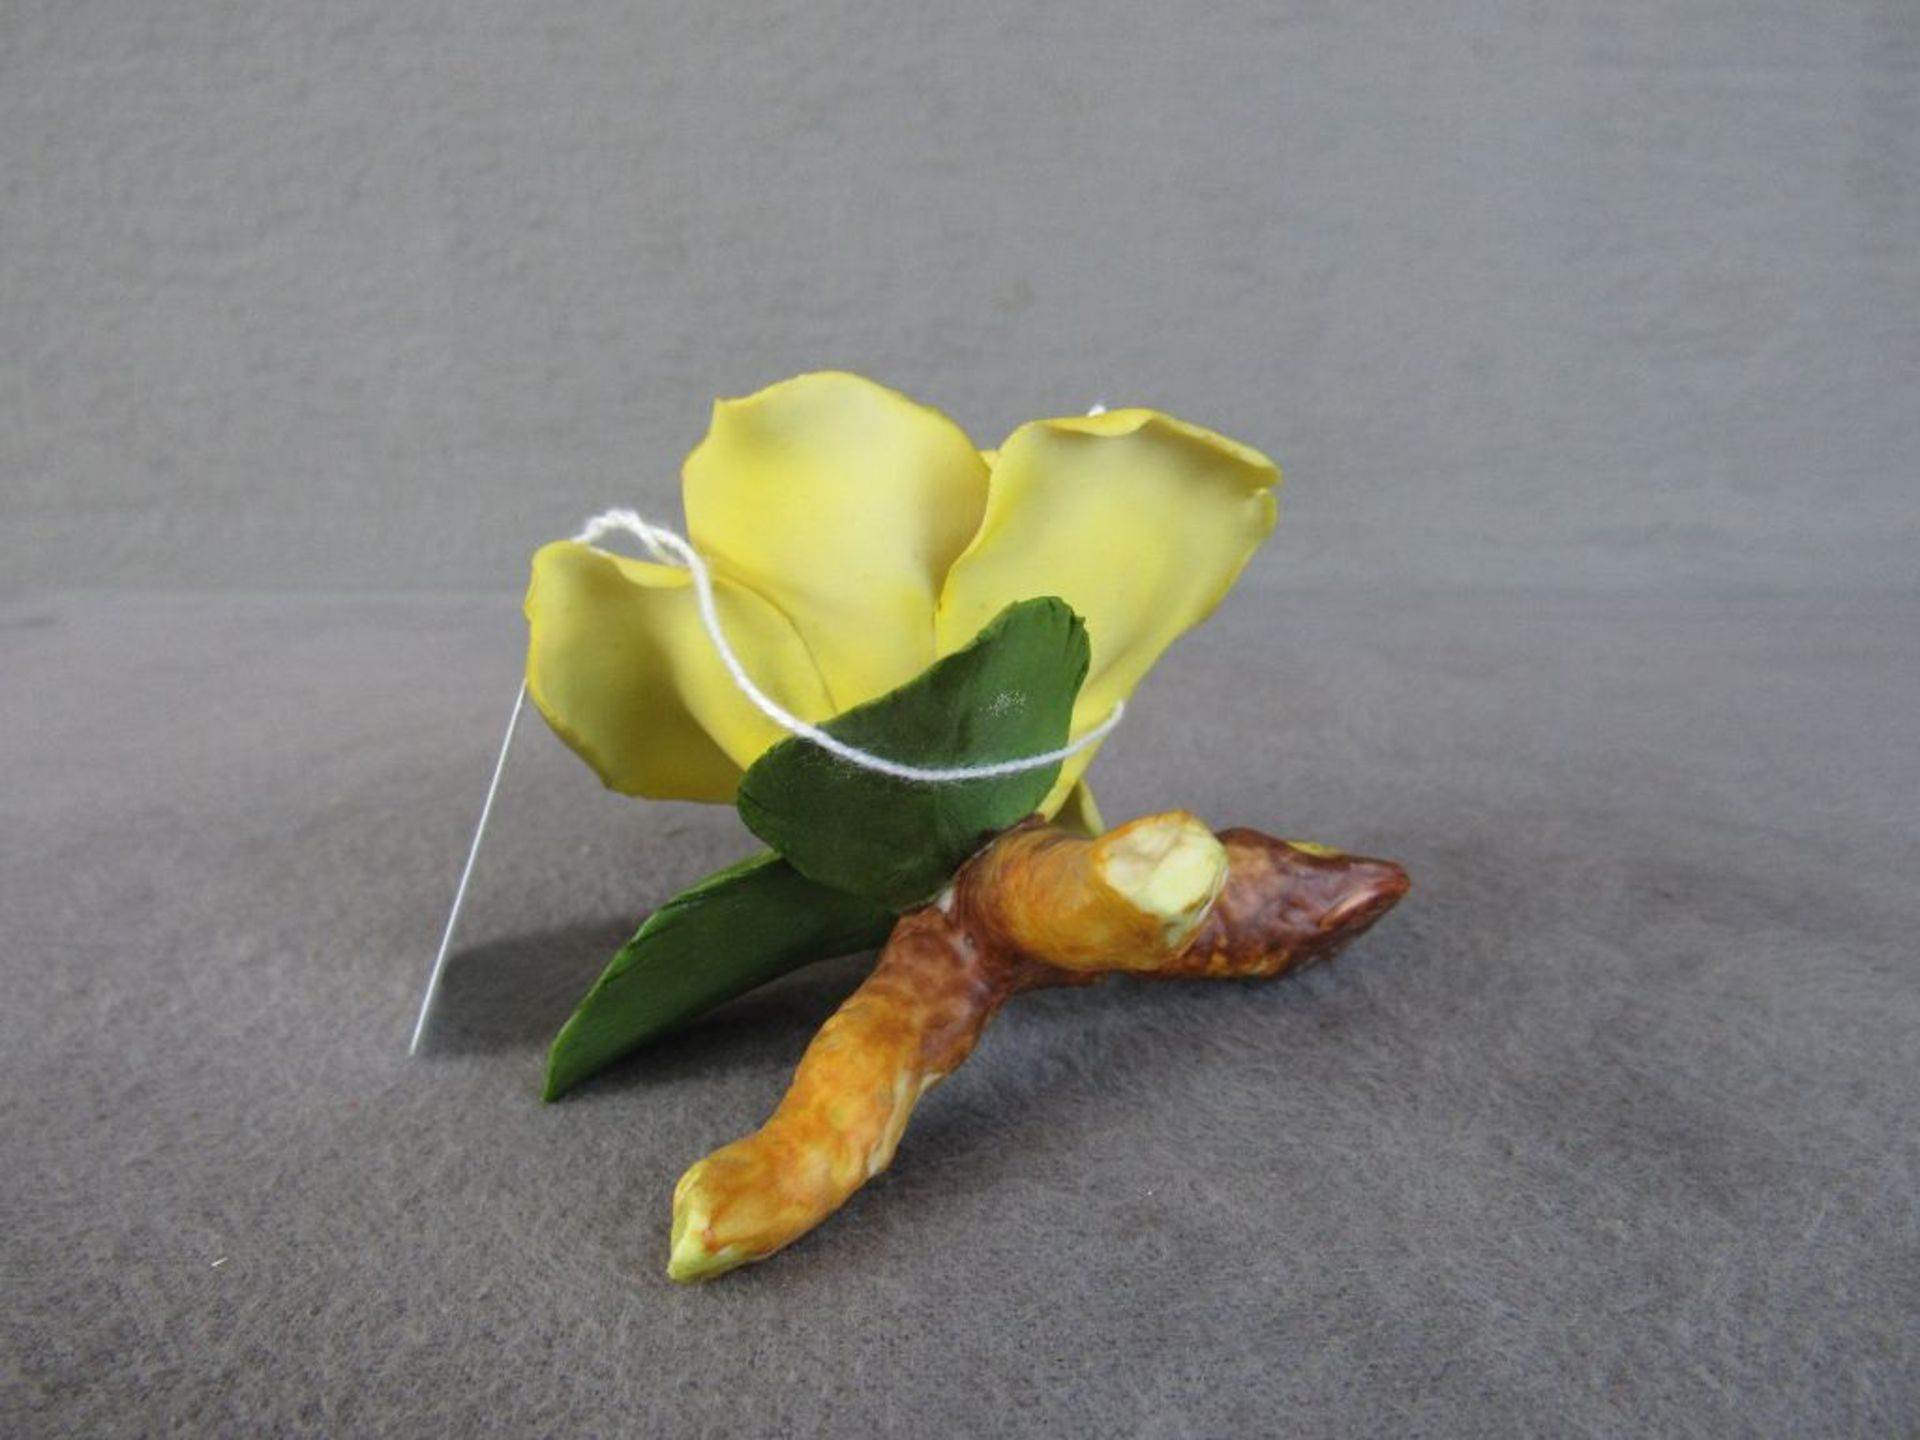 Skulptur Blume sehr deteil getreu gearbeitet Bisquitporzellan minimale Beschädigungen können - Bild 2 aus 3